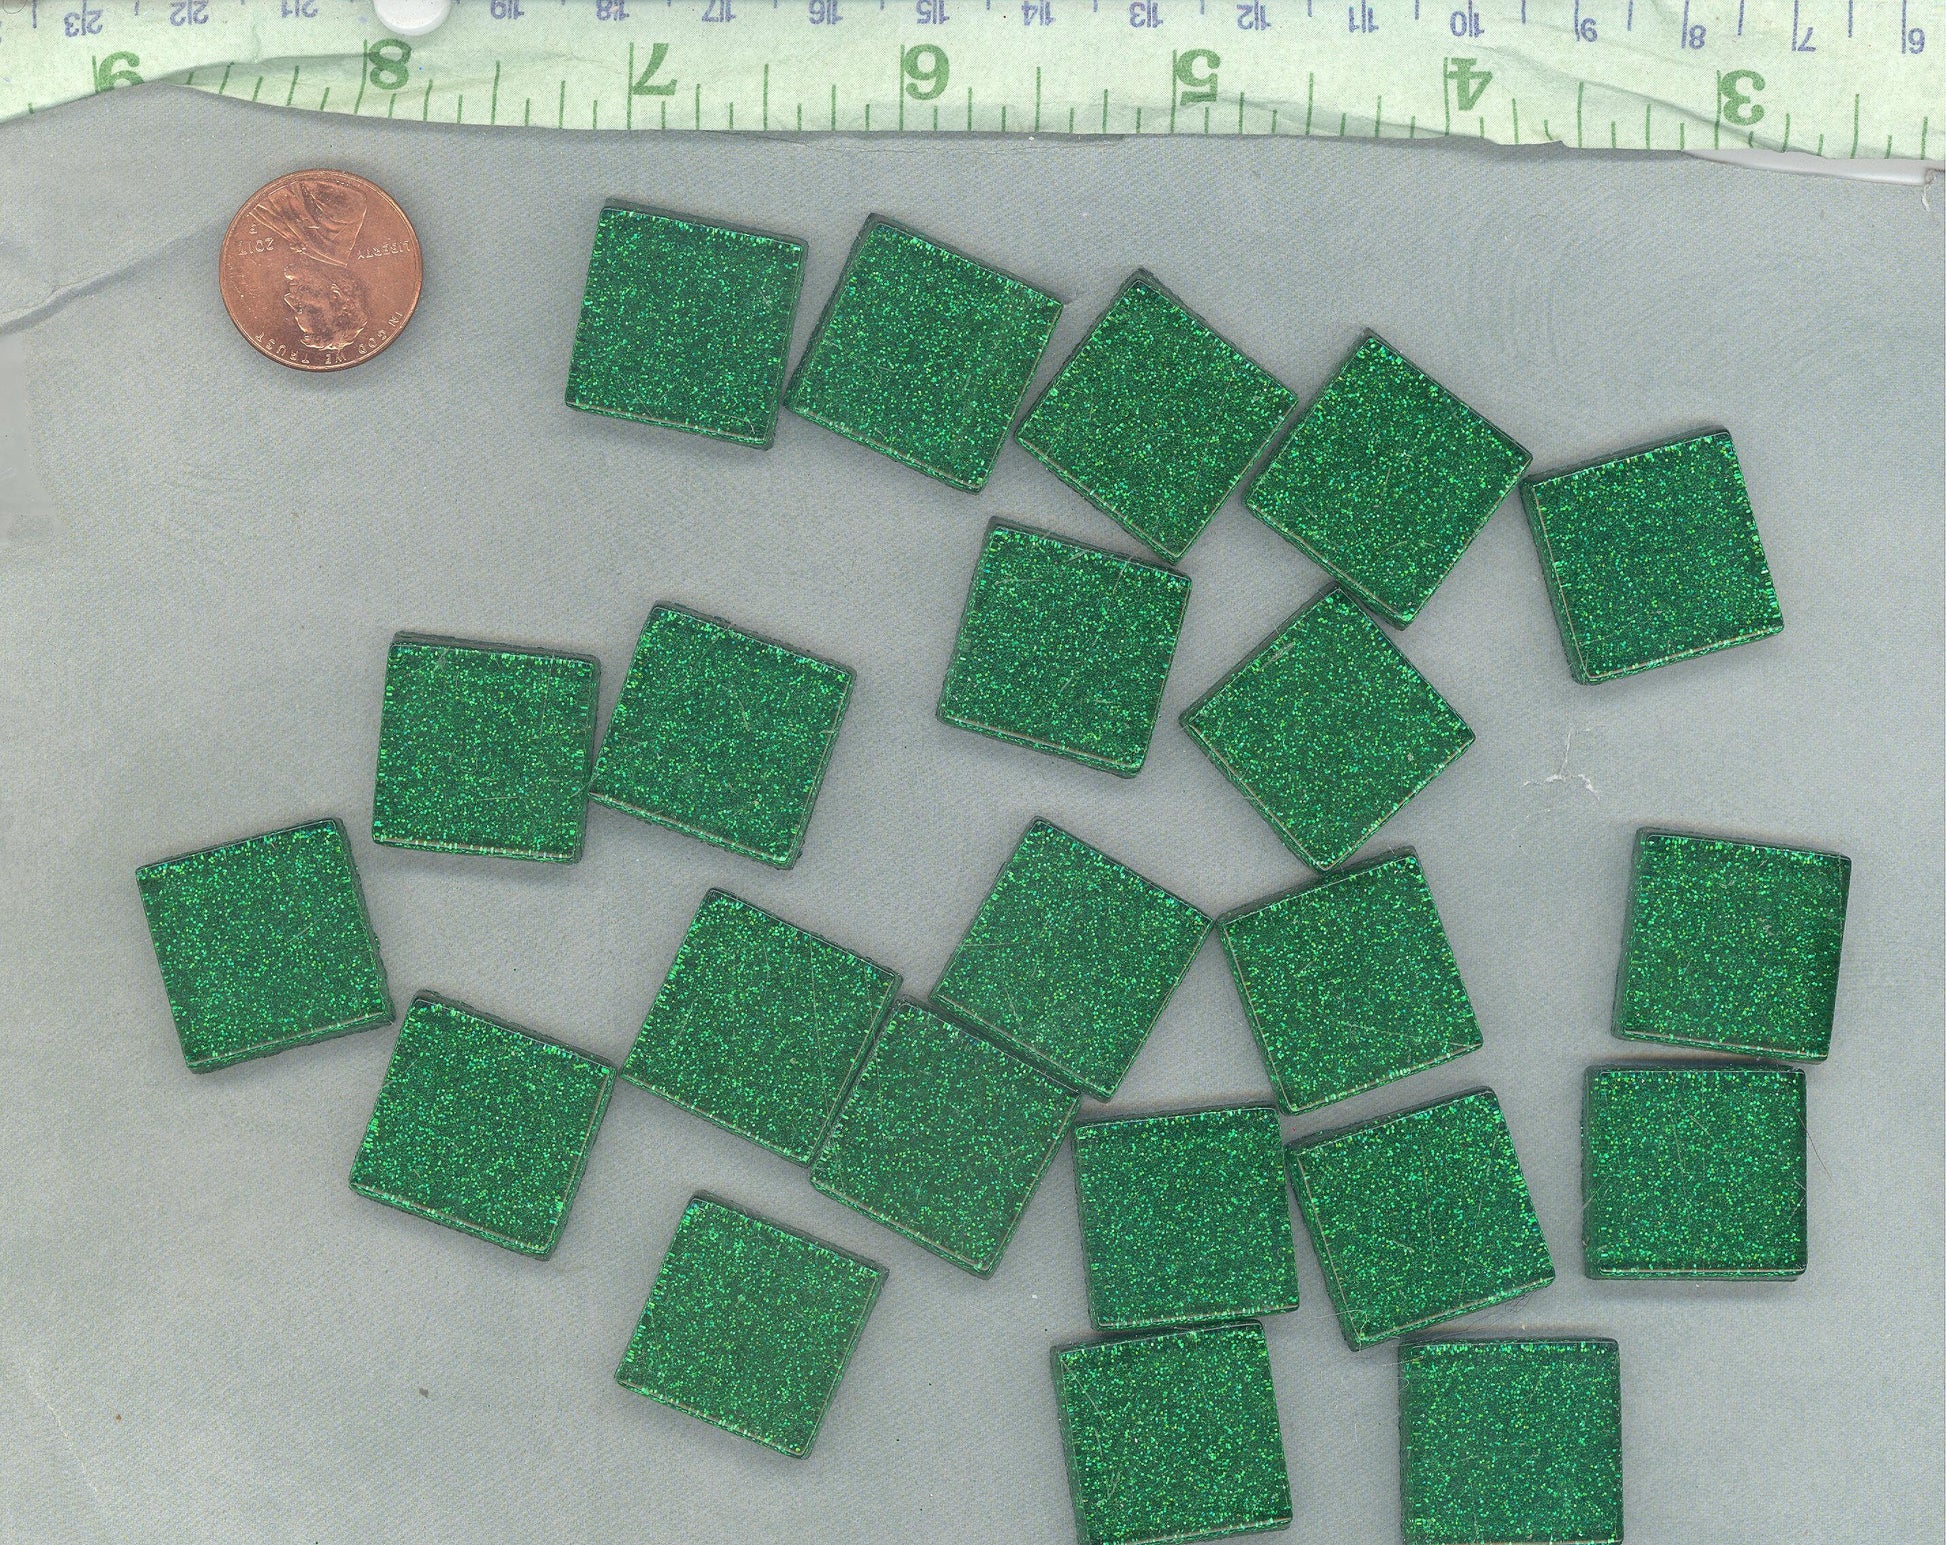 Green Glitter Tiles - 20mm Mosaic Tiles - 25 Metallic Glass Tiles